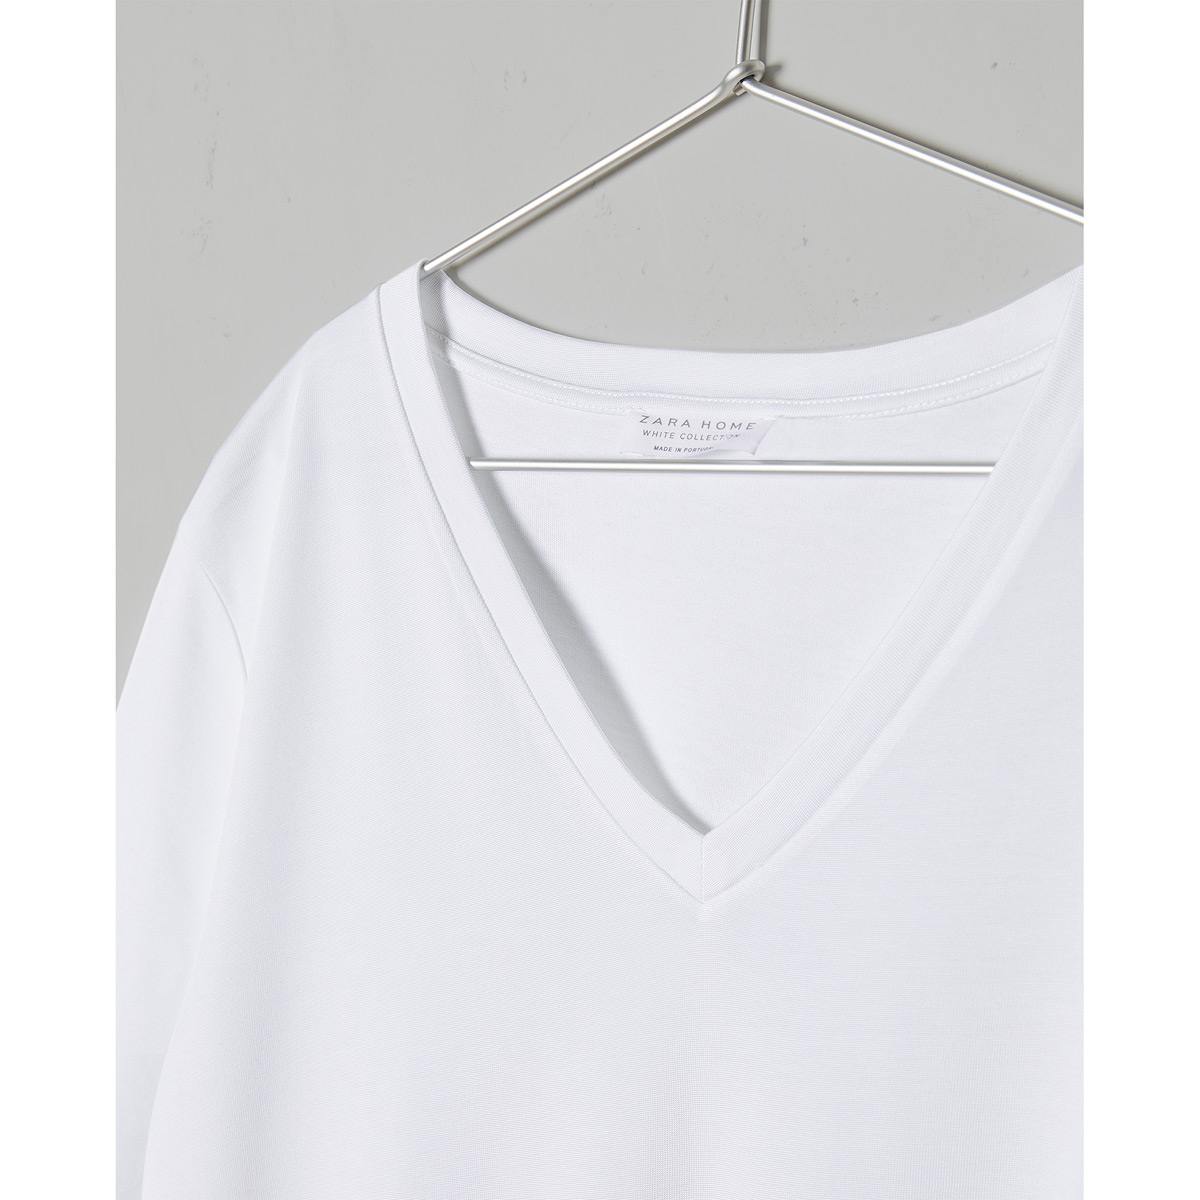 white t shirt dress zara